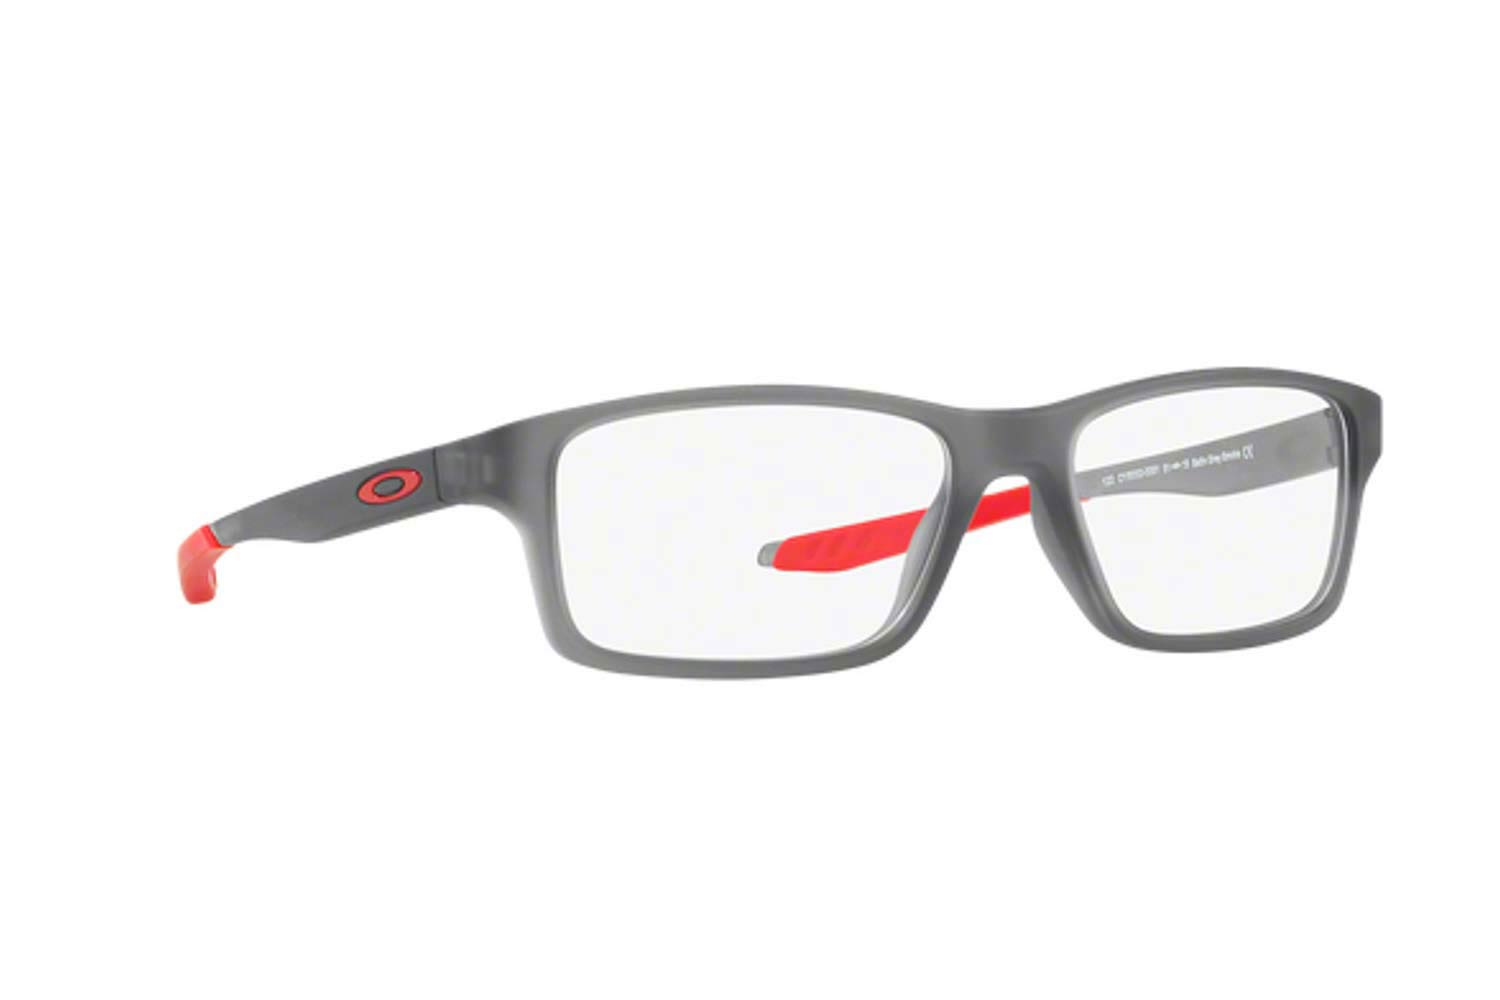 oakley eyeglasses for kids